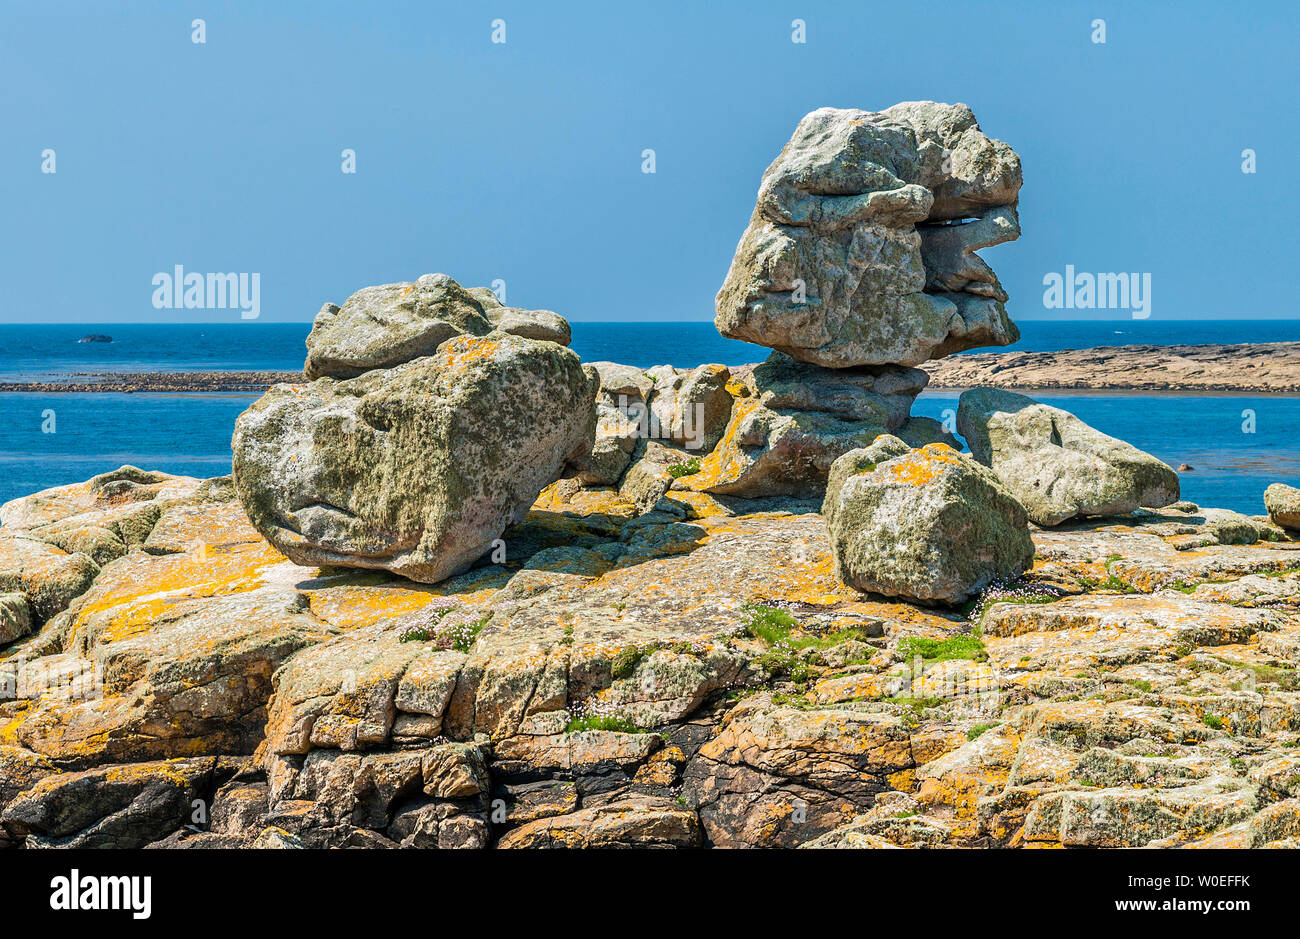 France, Brittany, Ile de Sein, decorative stones by the sea Stock Photo